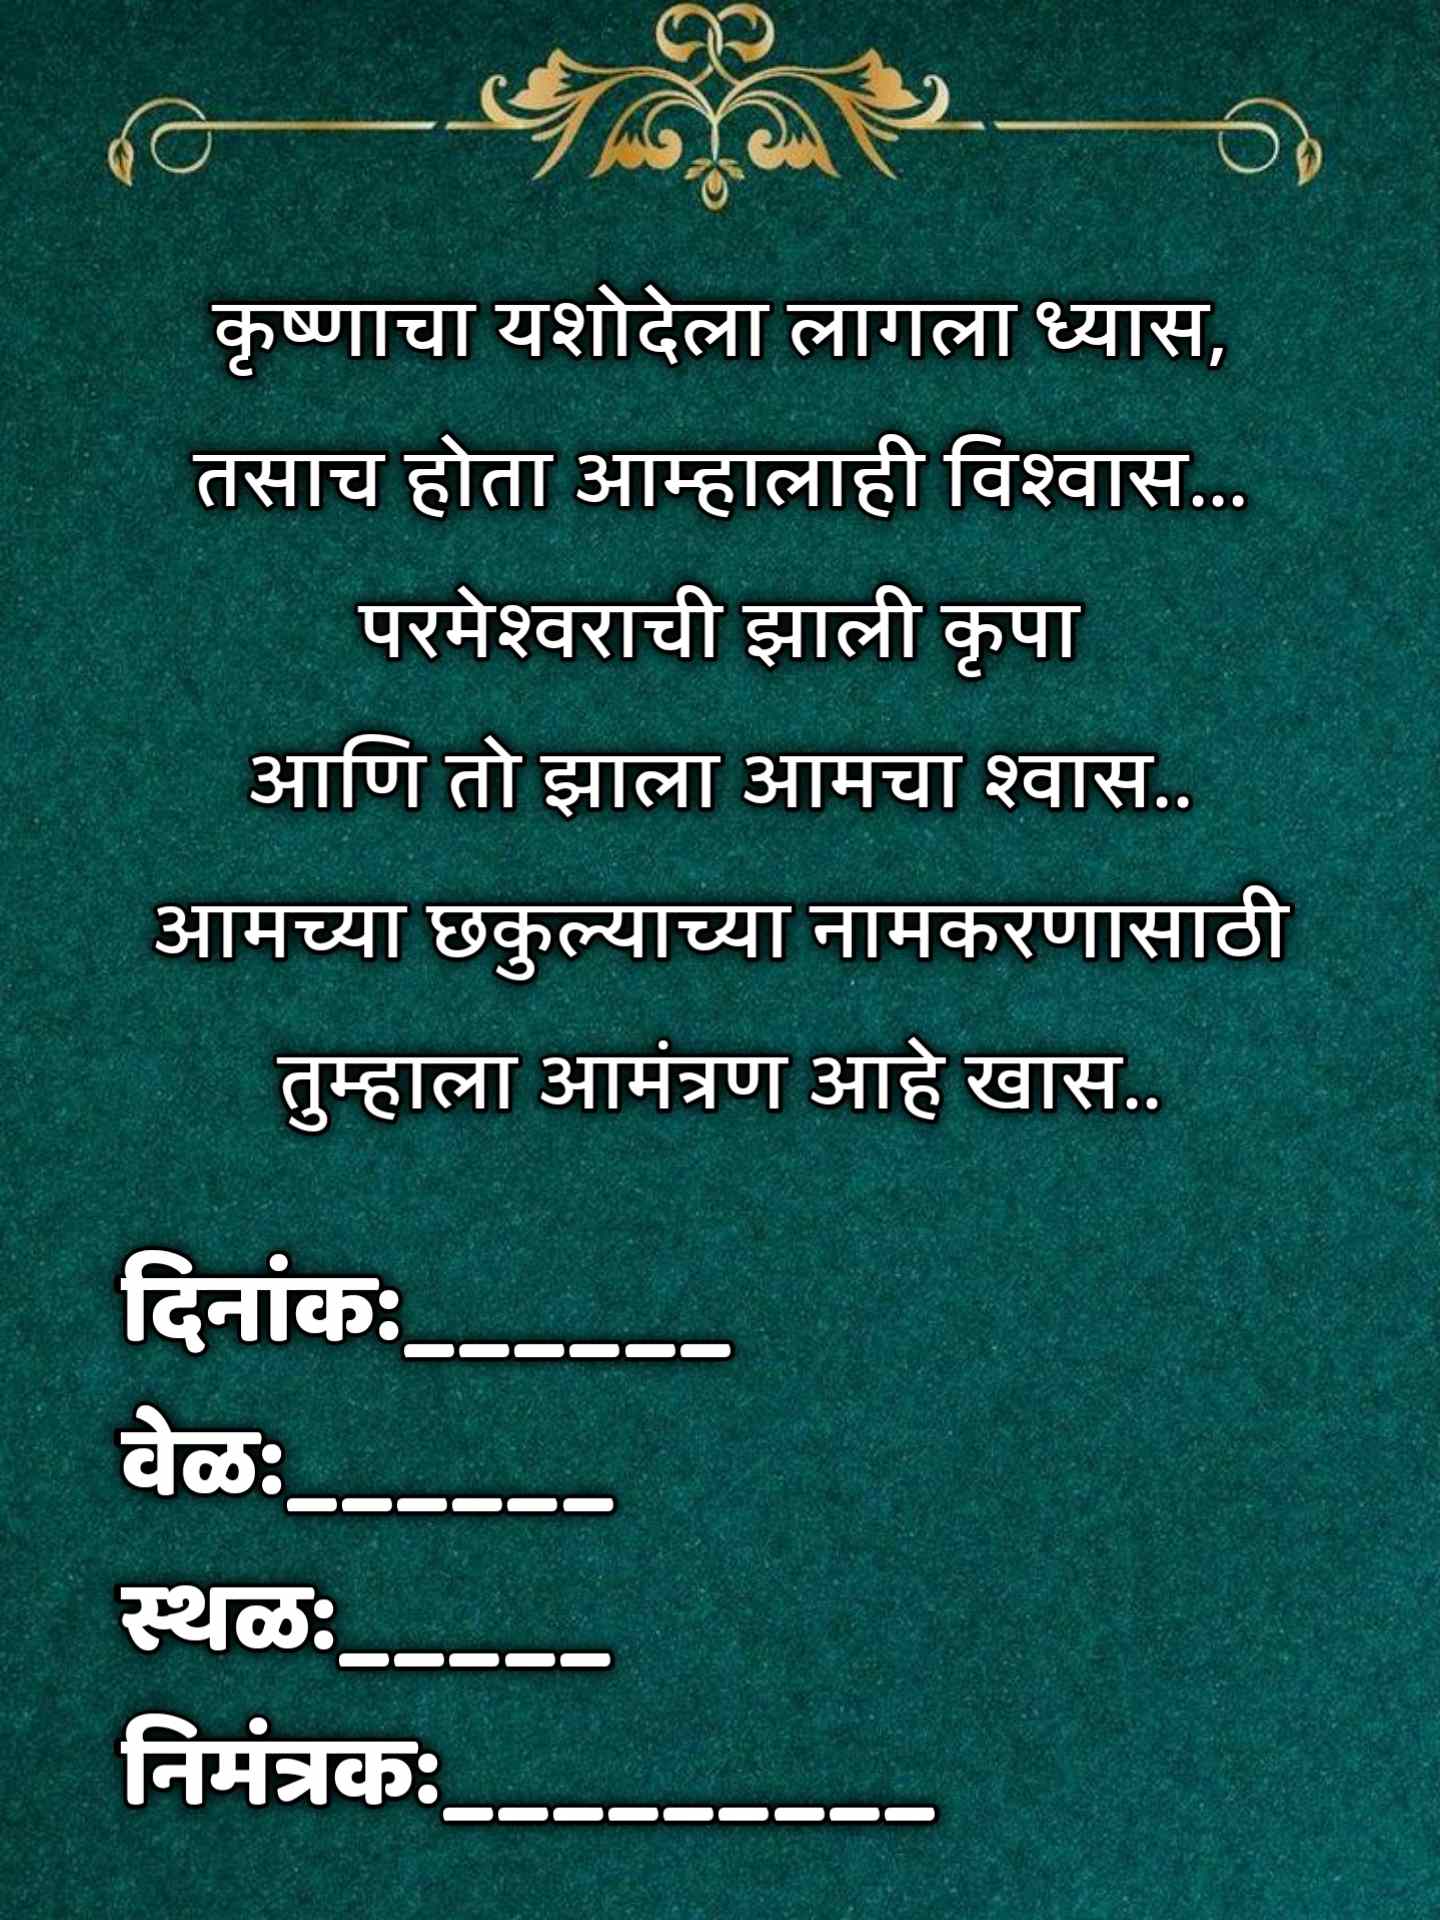 Namkaran Sohala Invitation Card Marathi 6 -